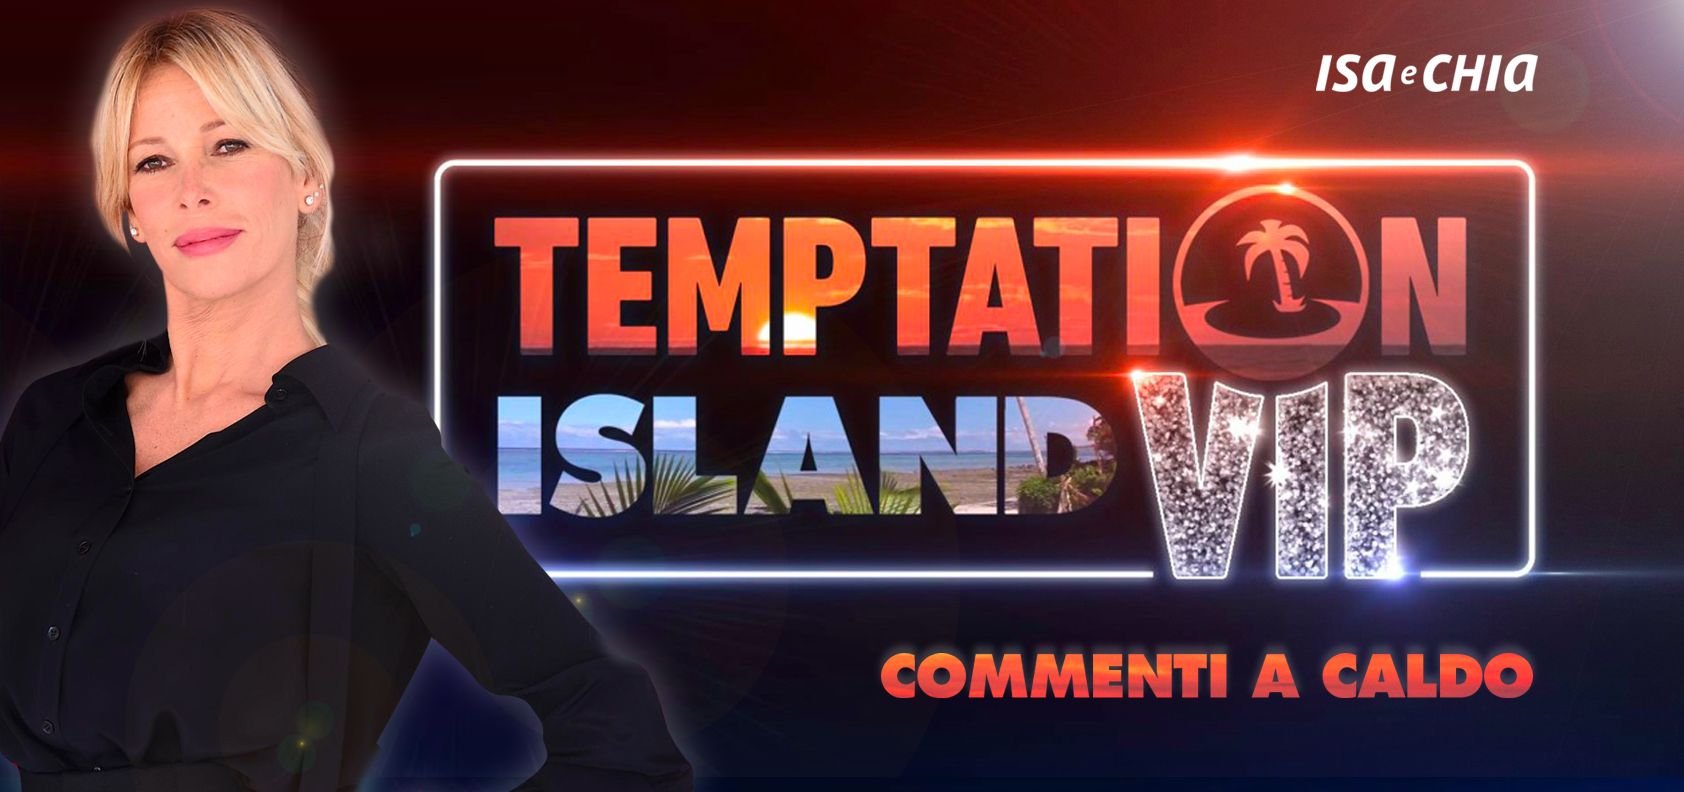 ‘Temptation Island Vip 2’, prima puntata: commenti a caldo